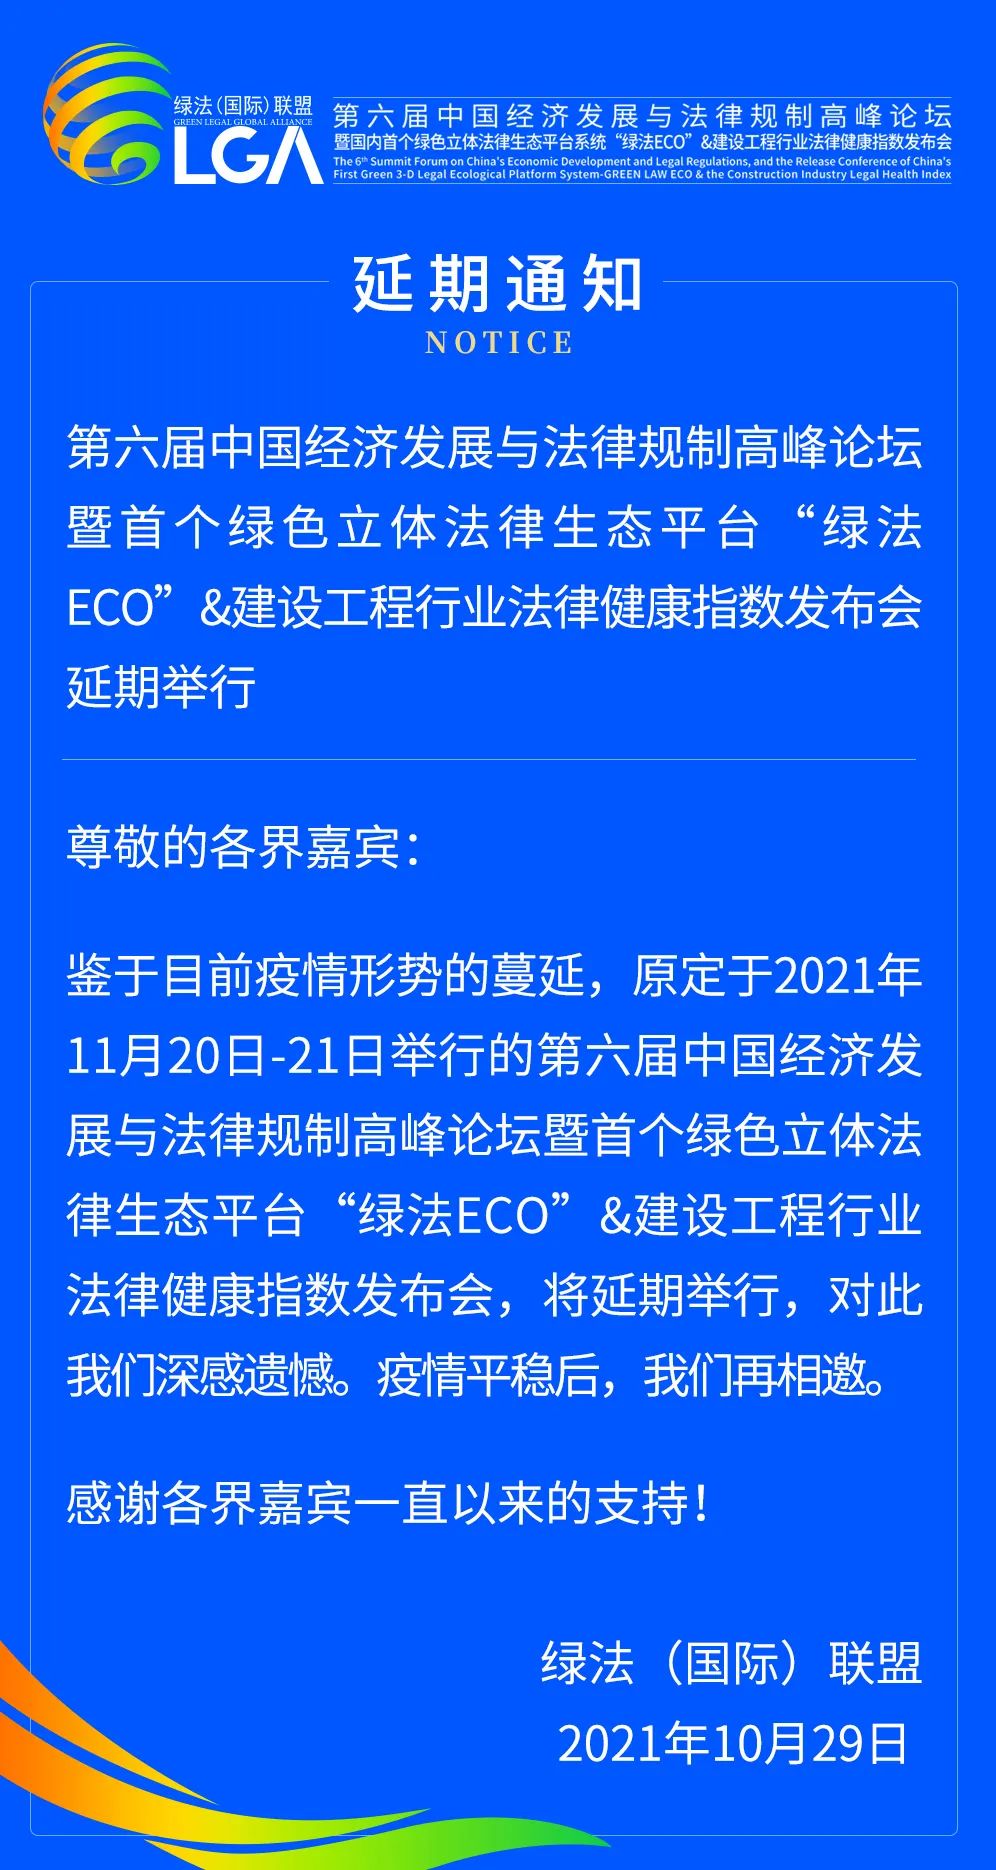 延期通知丨第六届中国经济发展与法律规制高峰论坛暨首个绿色立体法律生态平台“绿法ECO”&建设工程行业法律健康指数发布会延期举行